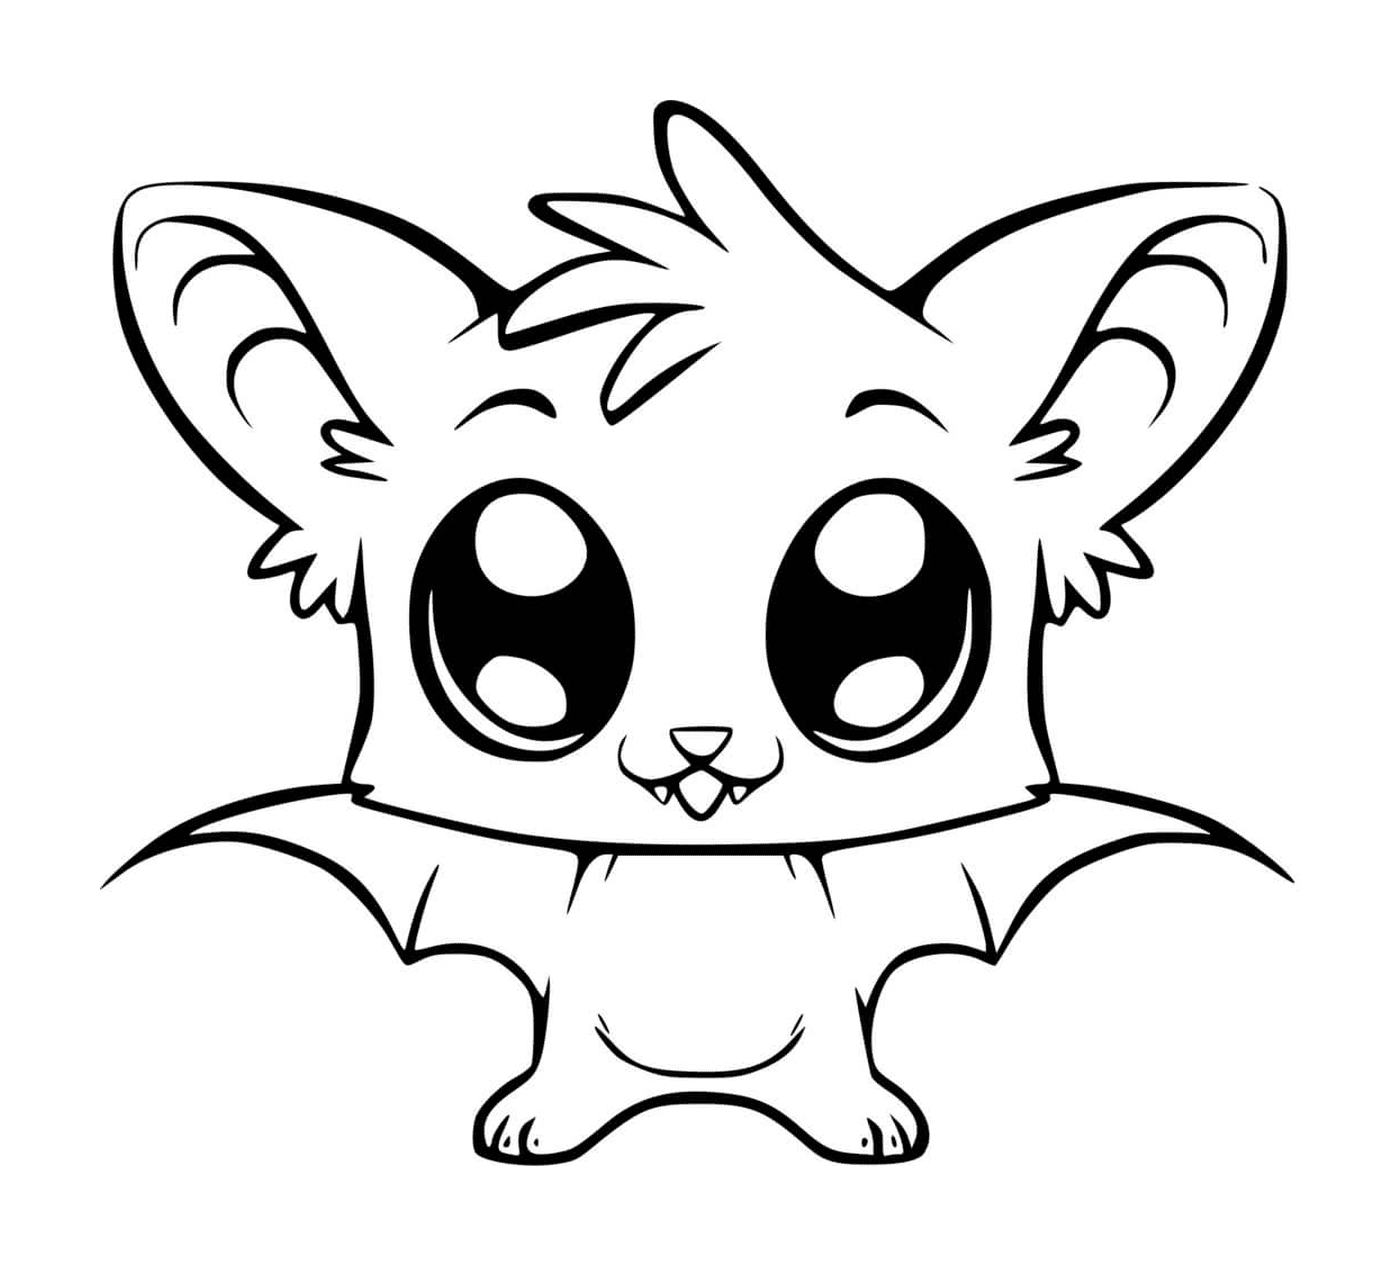  adorabile pipistrello kawaii 